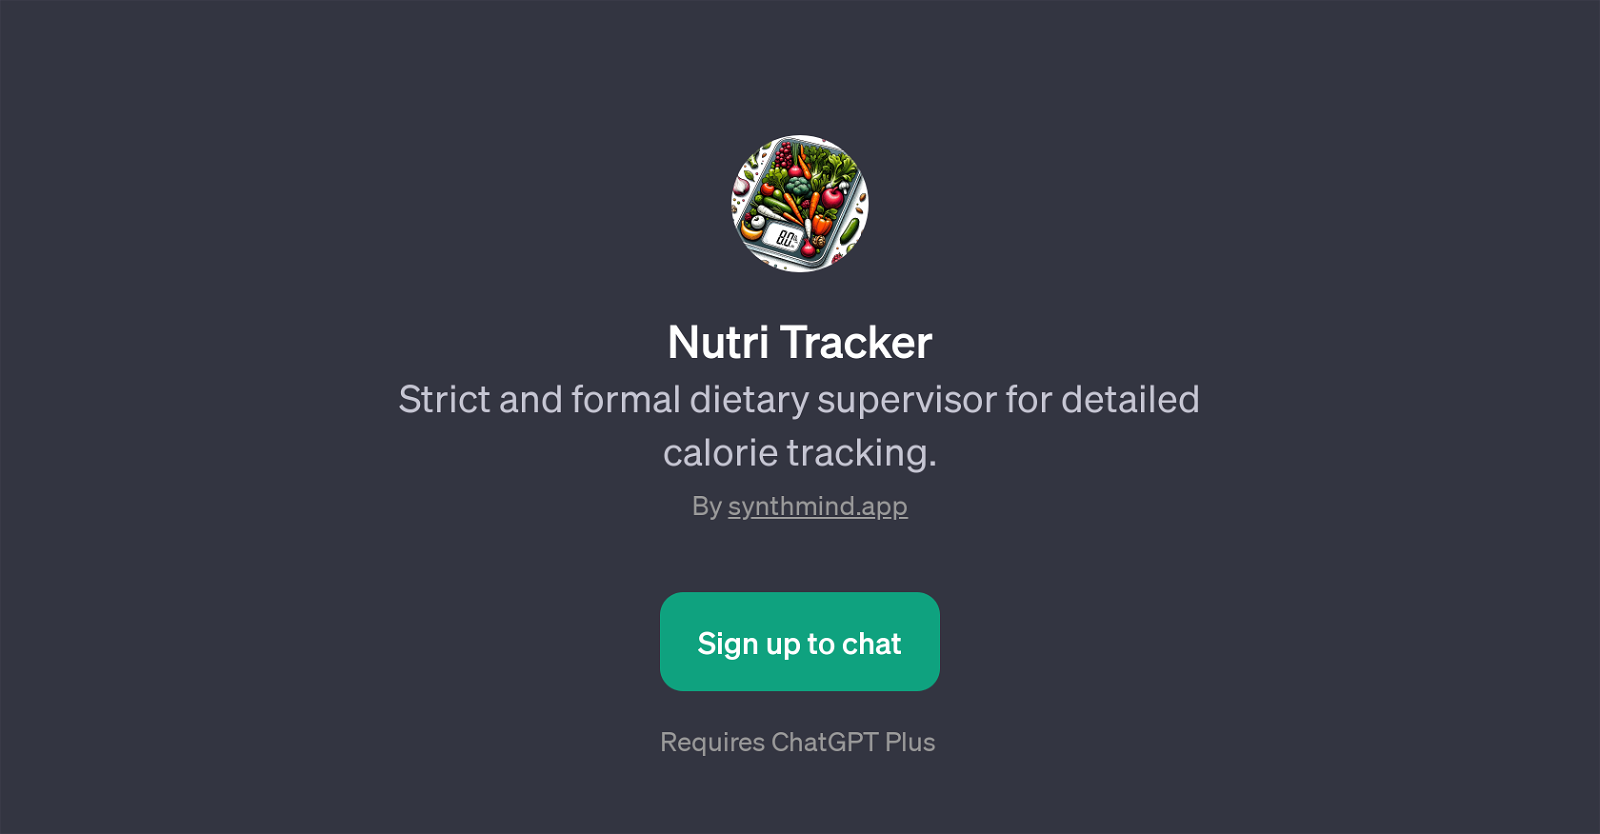 Nutri Tracker website